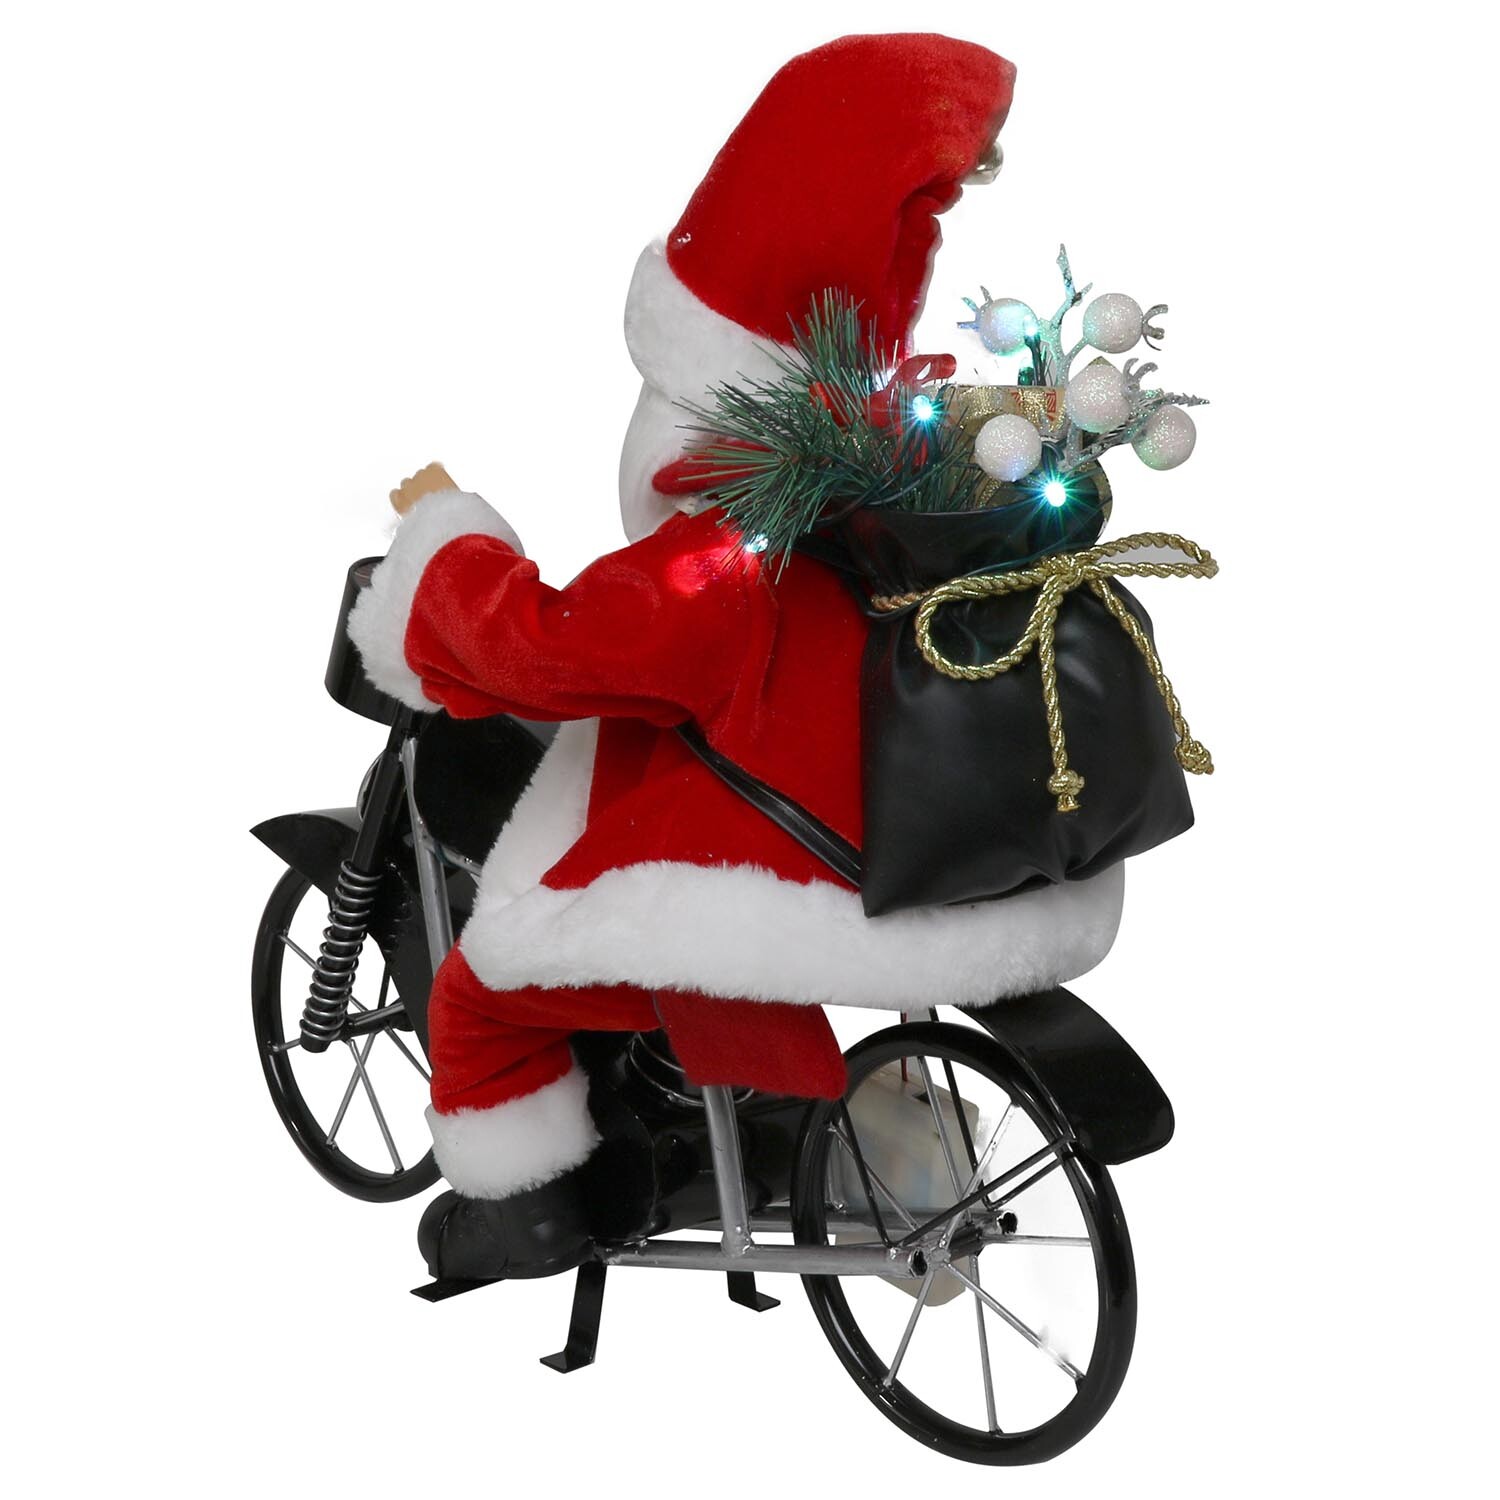 Musical Santa Riding Motorbike - Red Image 3